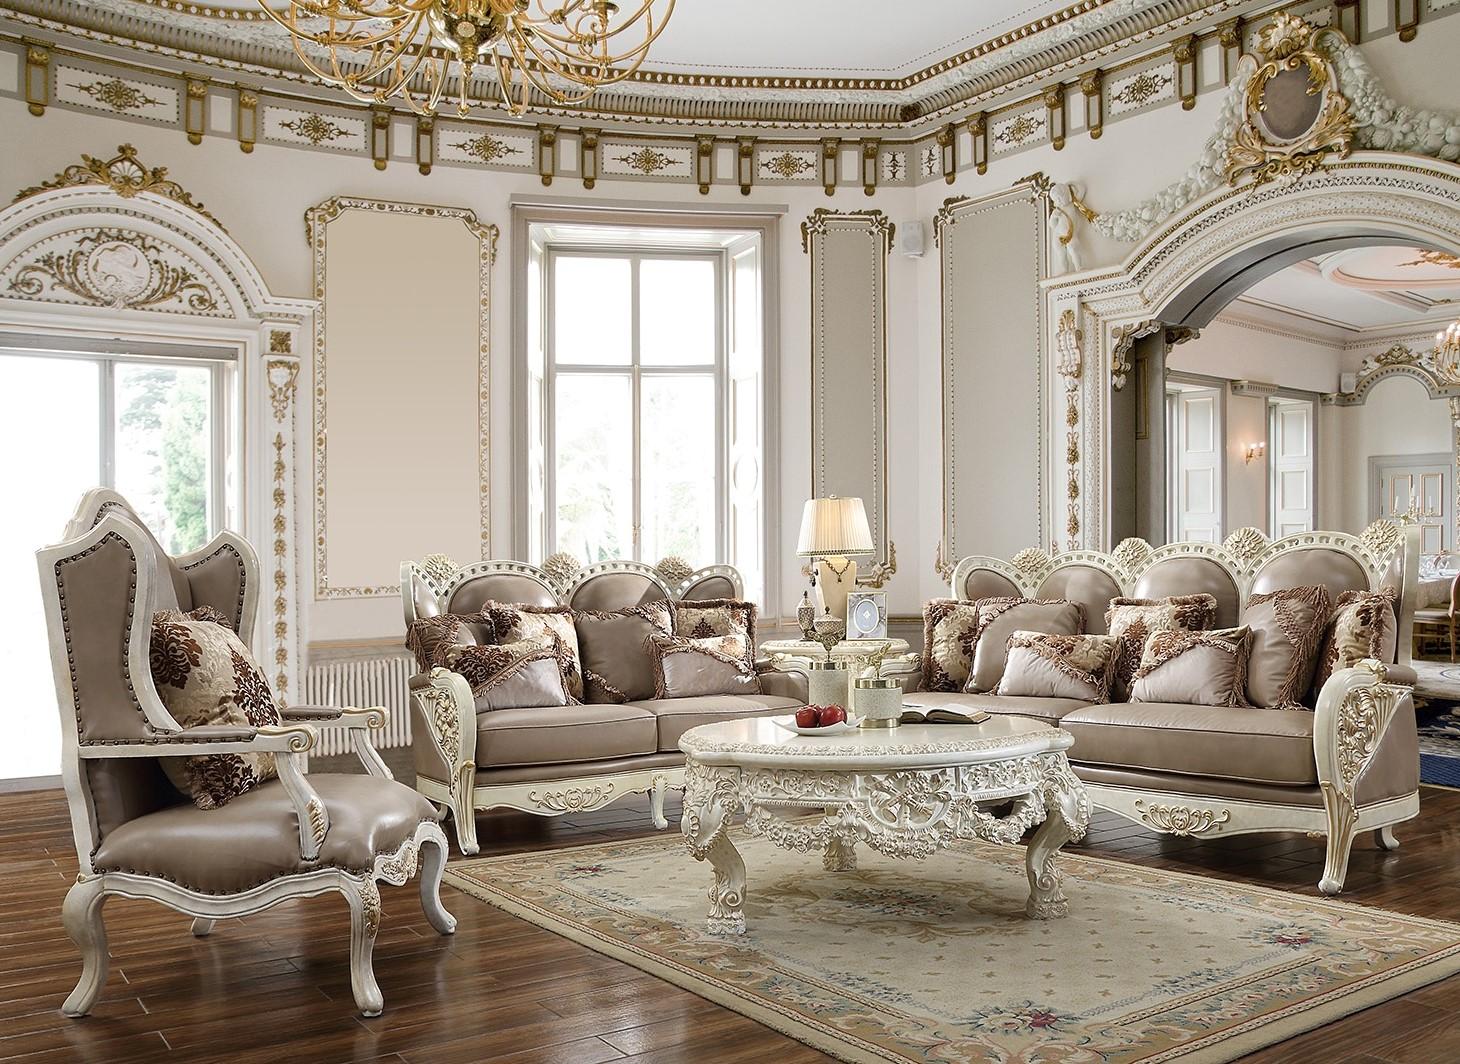 

    
Homey Design Furniture HD-90 Arm Chairs White/Tan/Gold HD-C90
